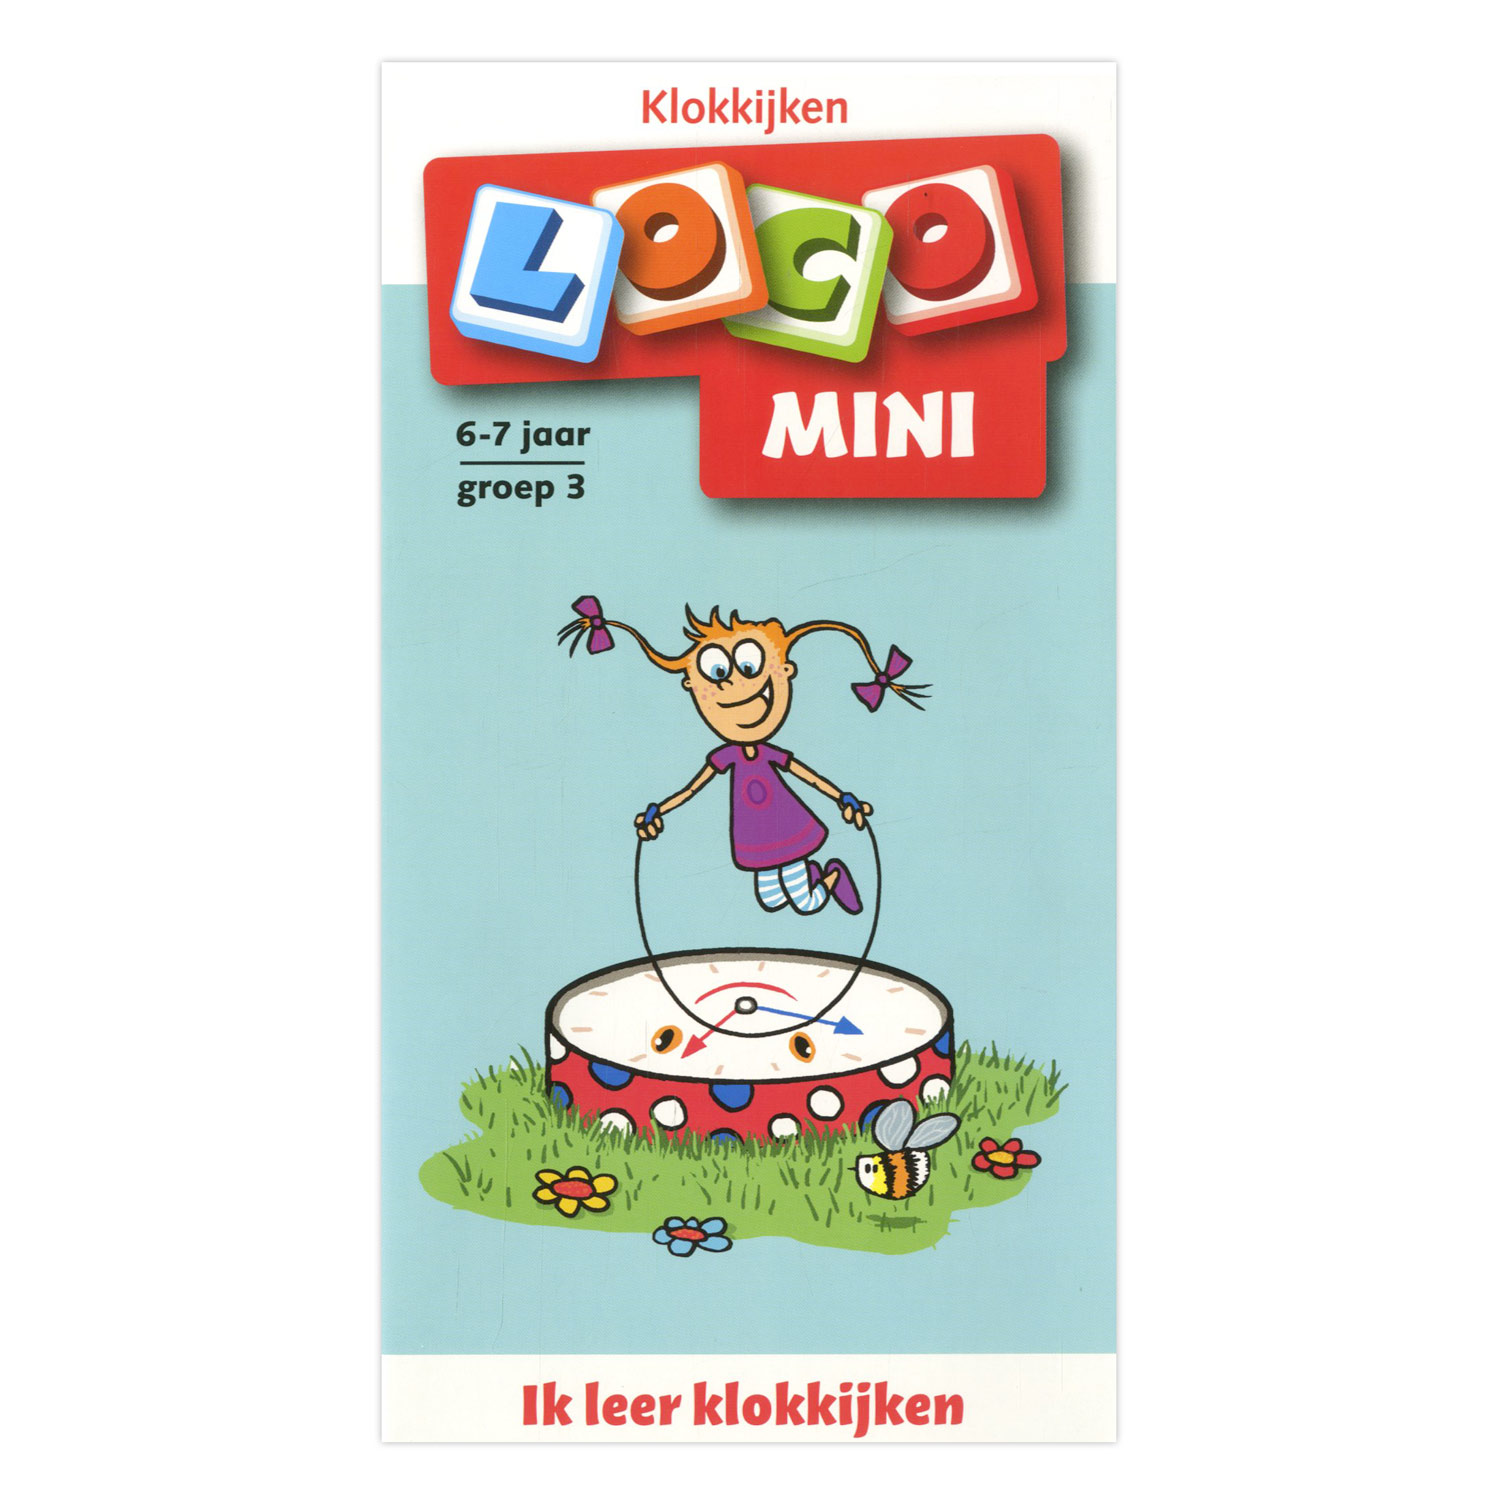 Beste Loco Mini Ik leer Klokkijken - Groep 3 (6-7 jr.) online kopen AM-21